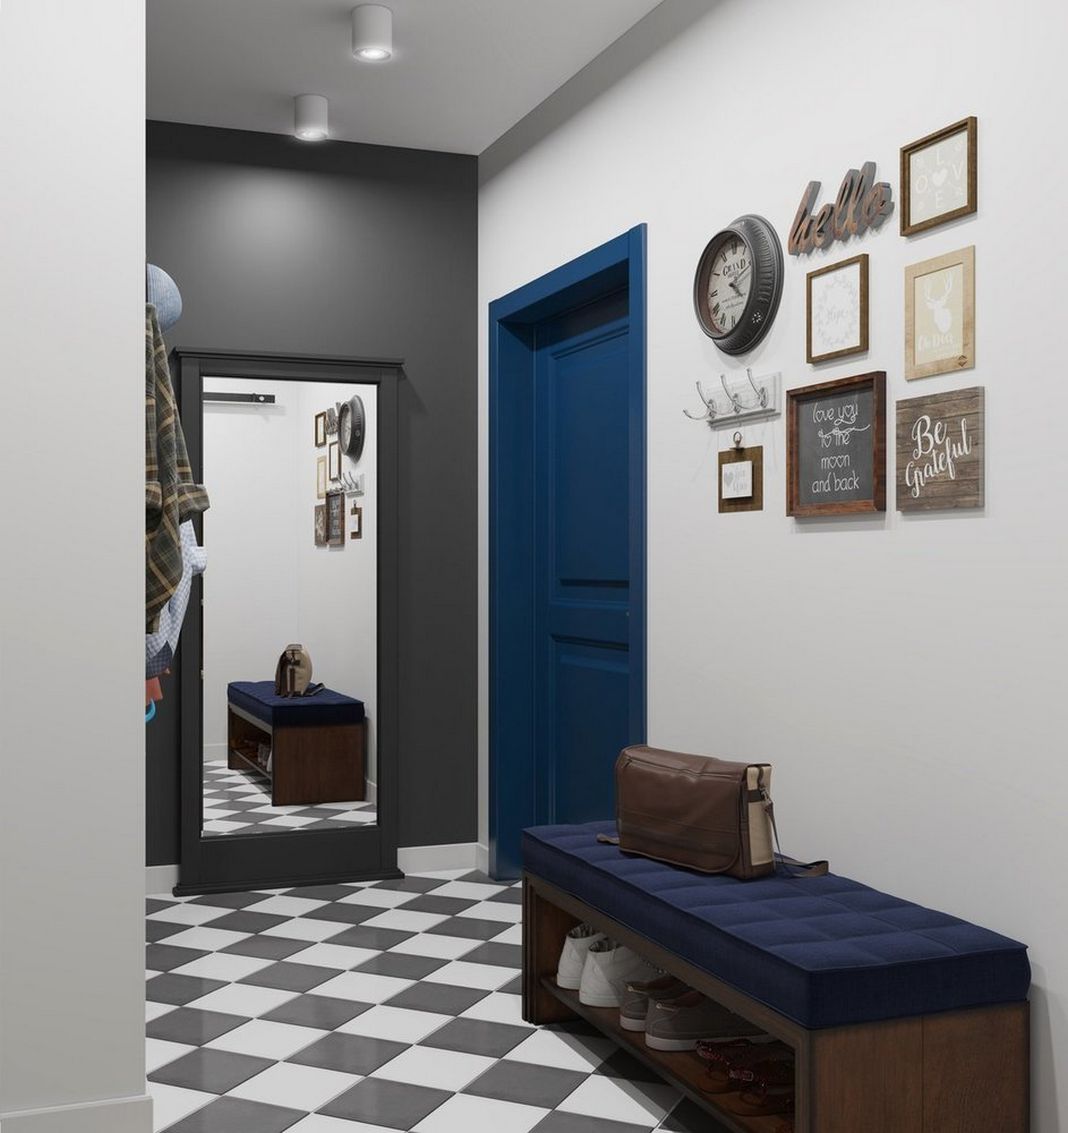 Előszoba - kék ajtó, szürke és fehér falak, szürke-fehér padlóburkolat átlóban lerakva, cipőtartós pad, tükör